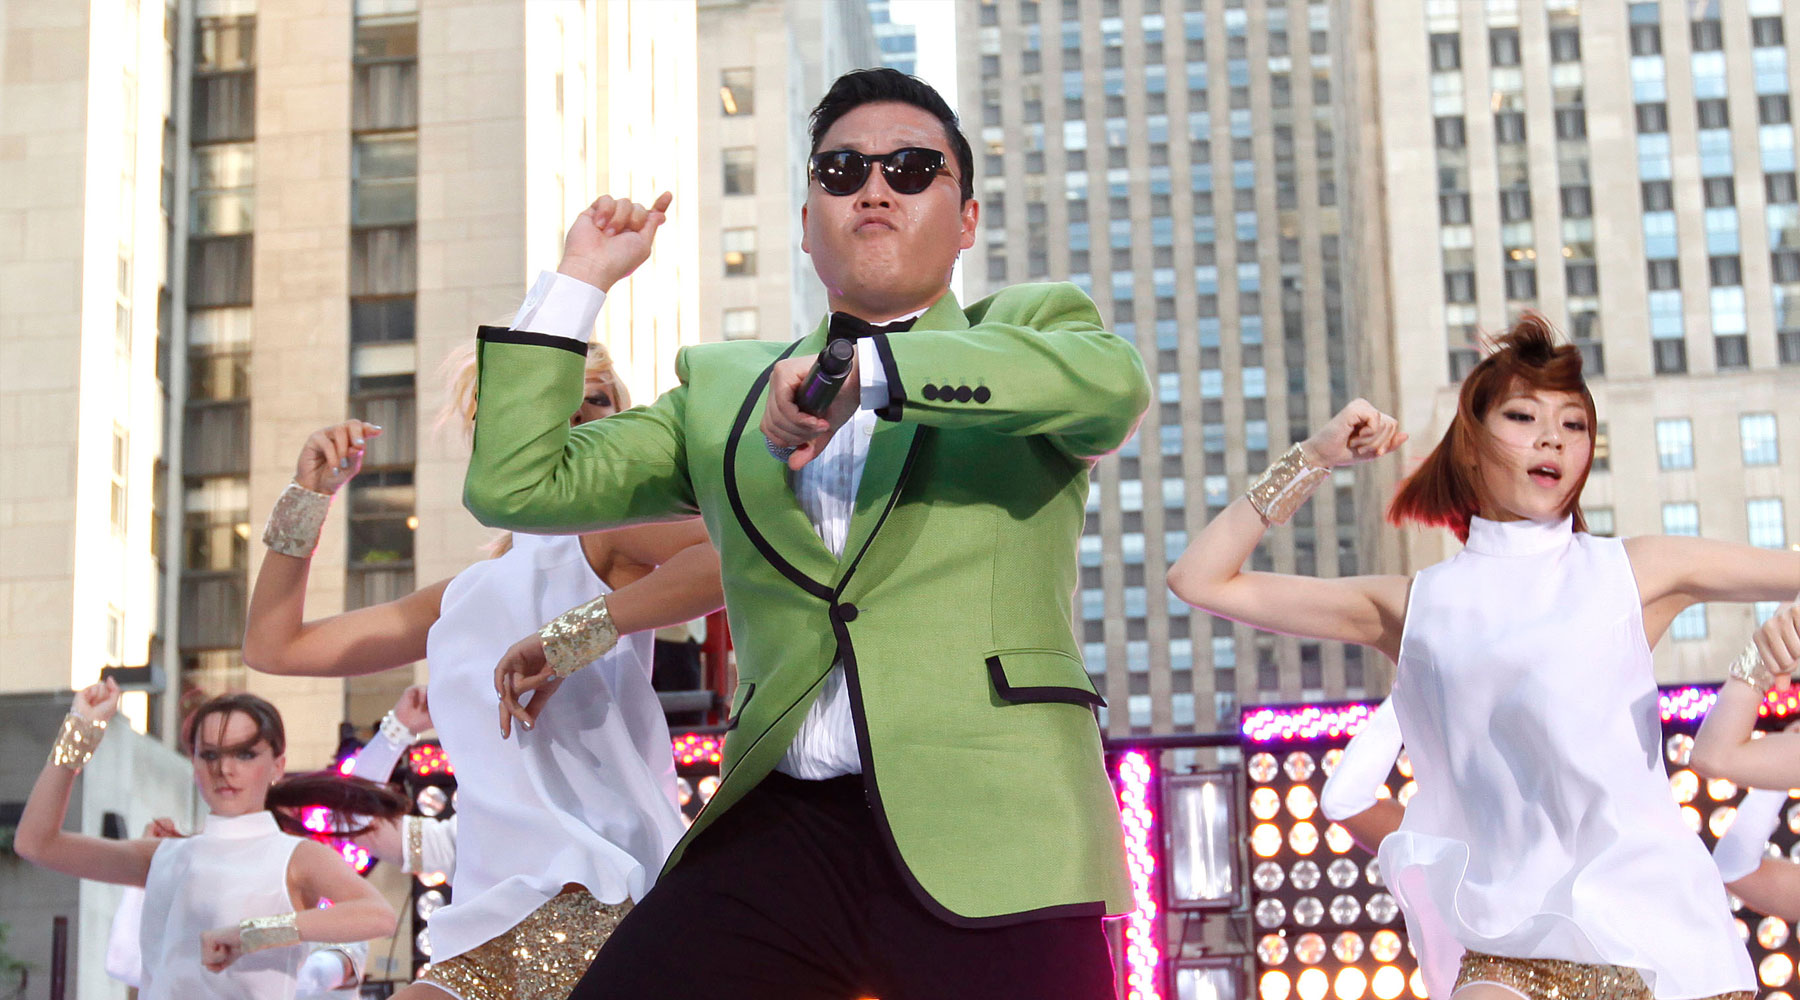 Гамнамстайл. Псай 2012. Psy корейский исполнитель. Стиль гангнам стайл. Psy опа гангам стайл.